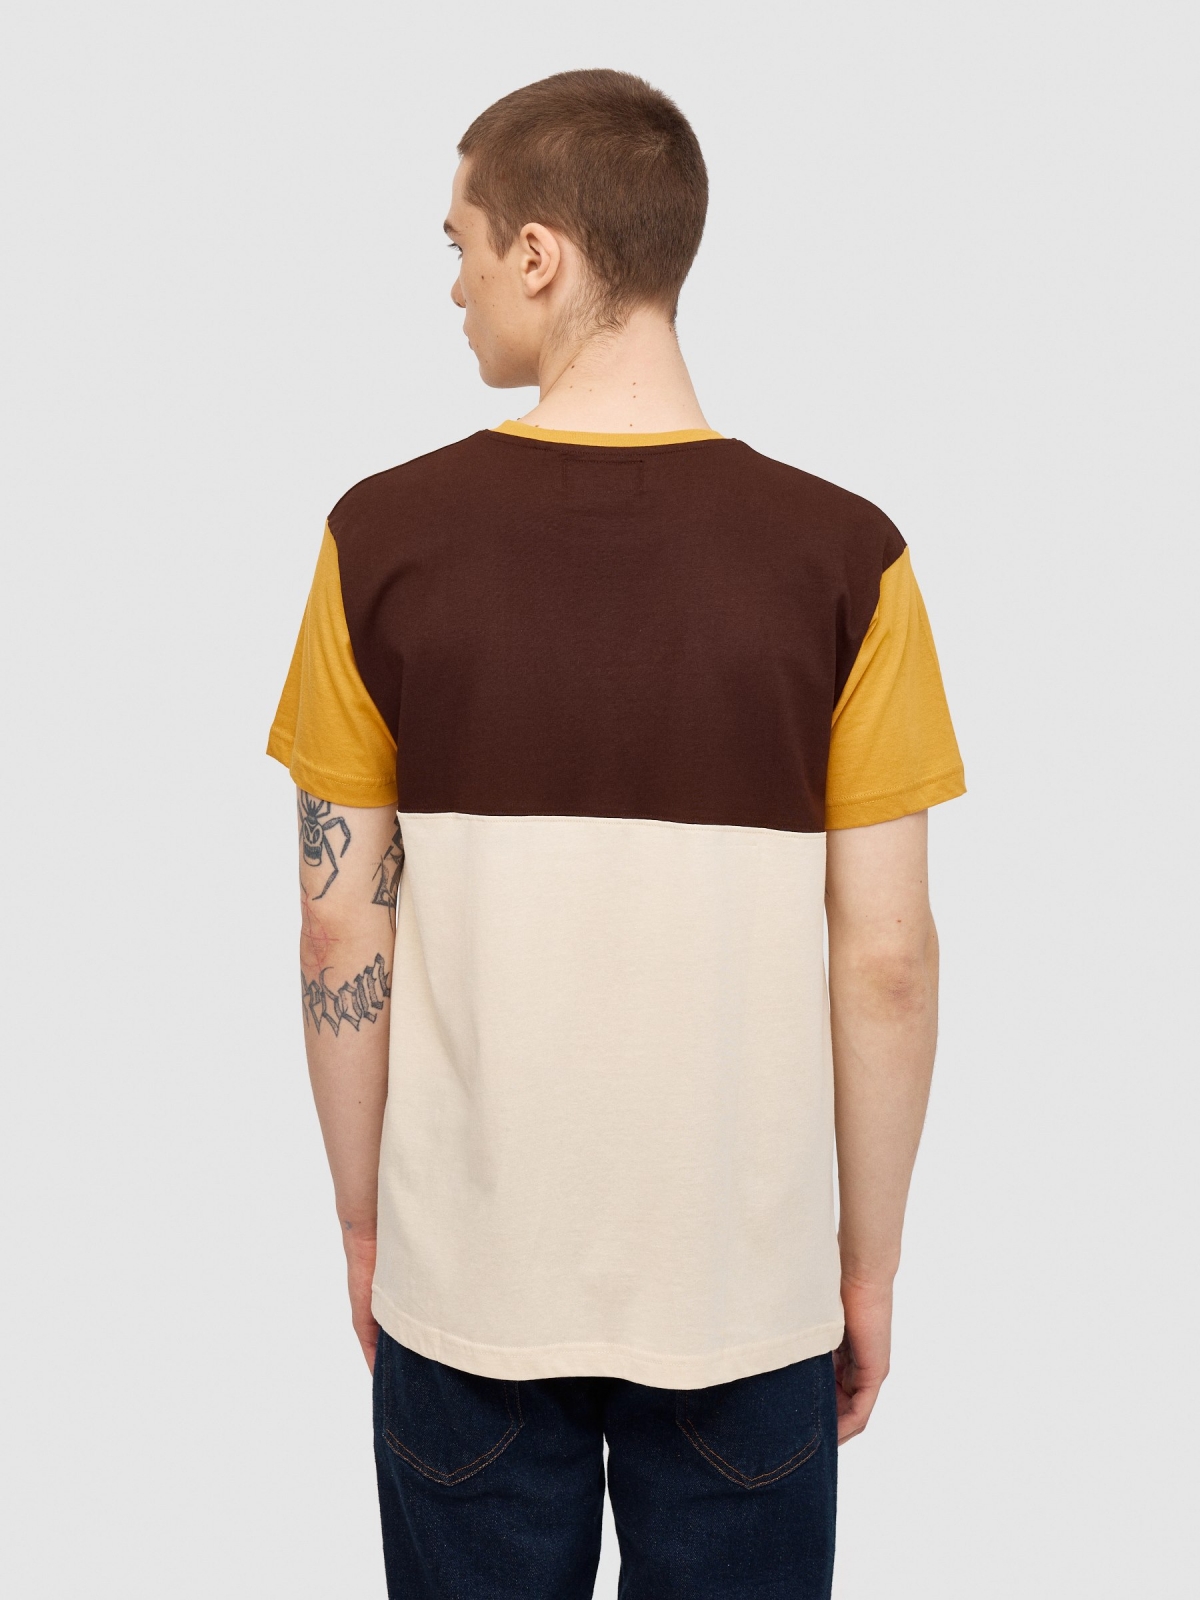 Bloco de cores da t-shirt com texto areia vista meia traseira